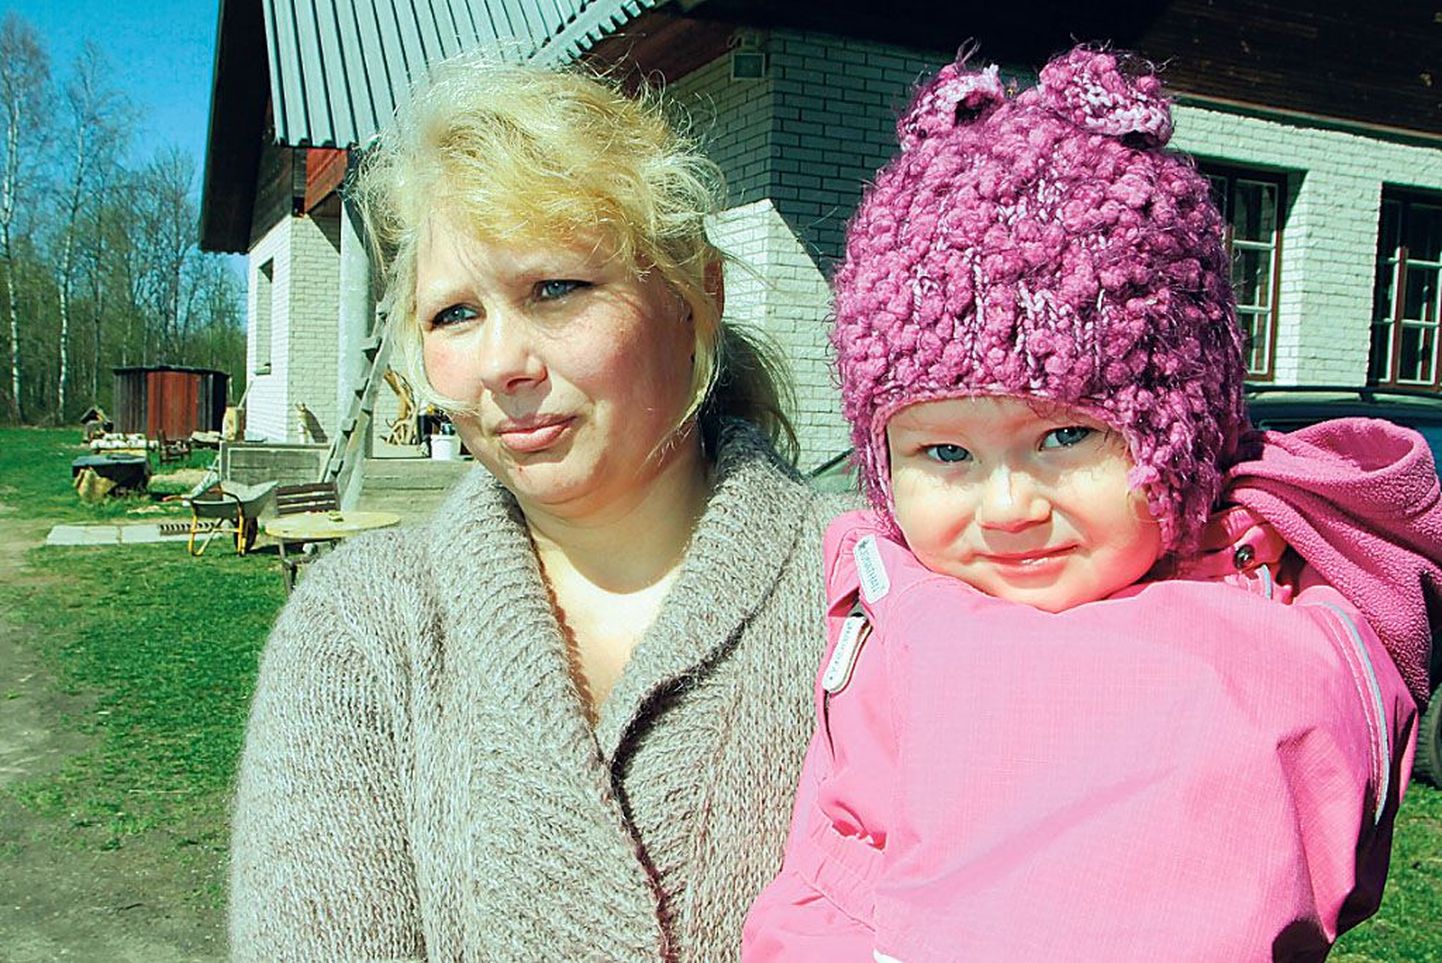 Luhala talu perenaine Õnneli Lõhmus hoiab süles pesamuna Kätlinit, kes samuti emadepäeval Estoniasse kaasa võetakse.